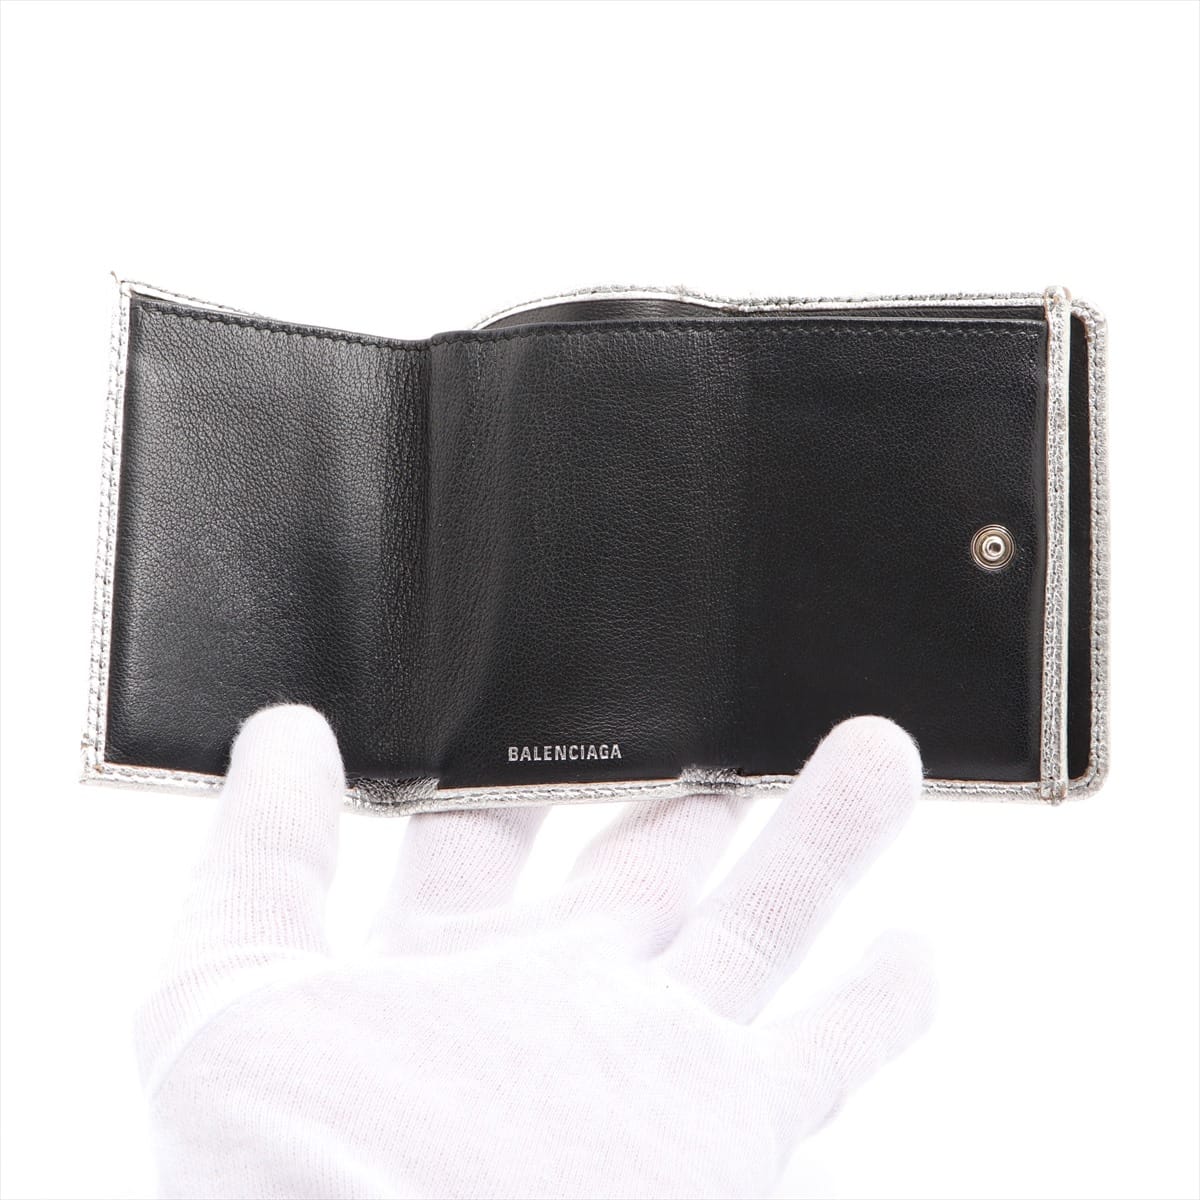 Balenciaga Everyday 551921 Leather Wallet Silver